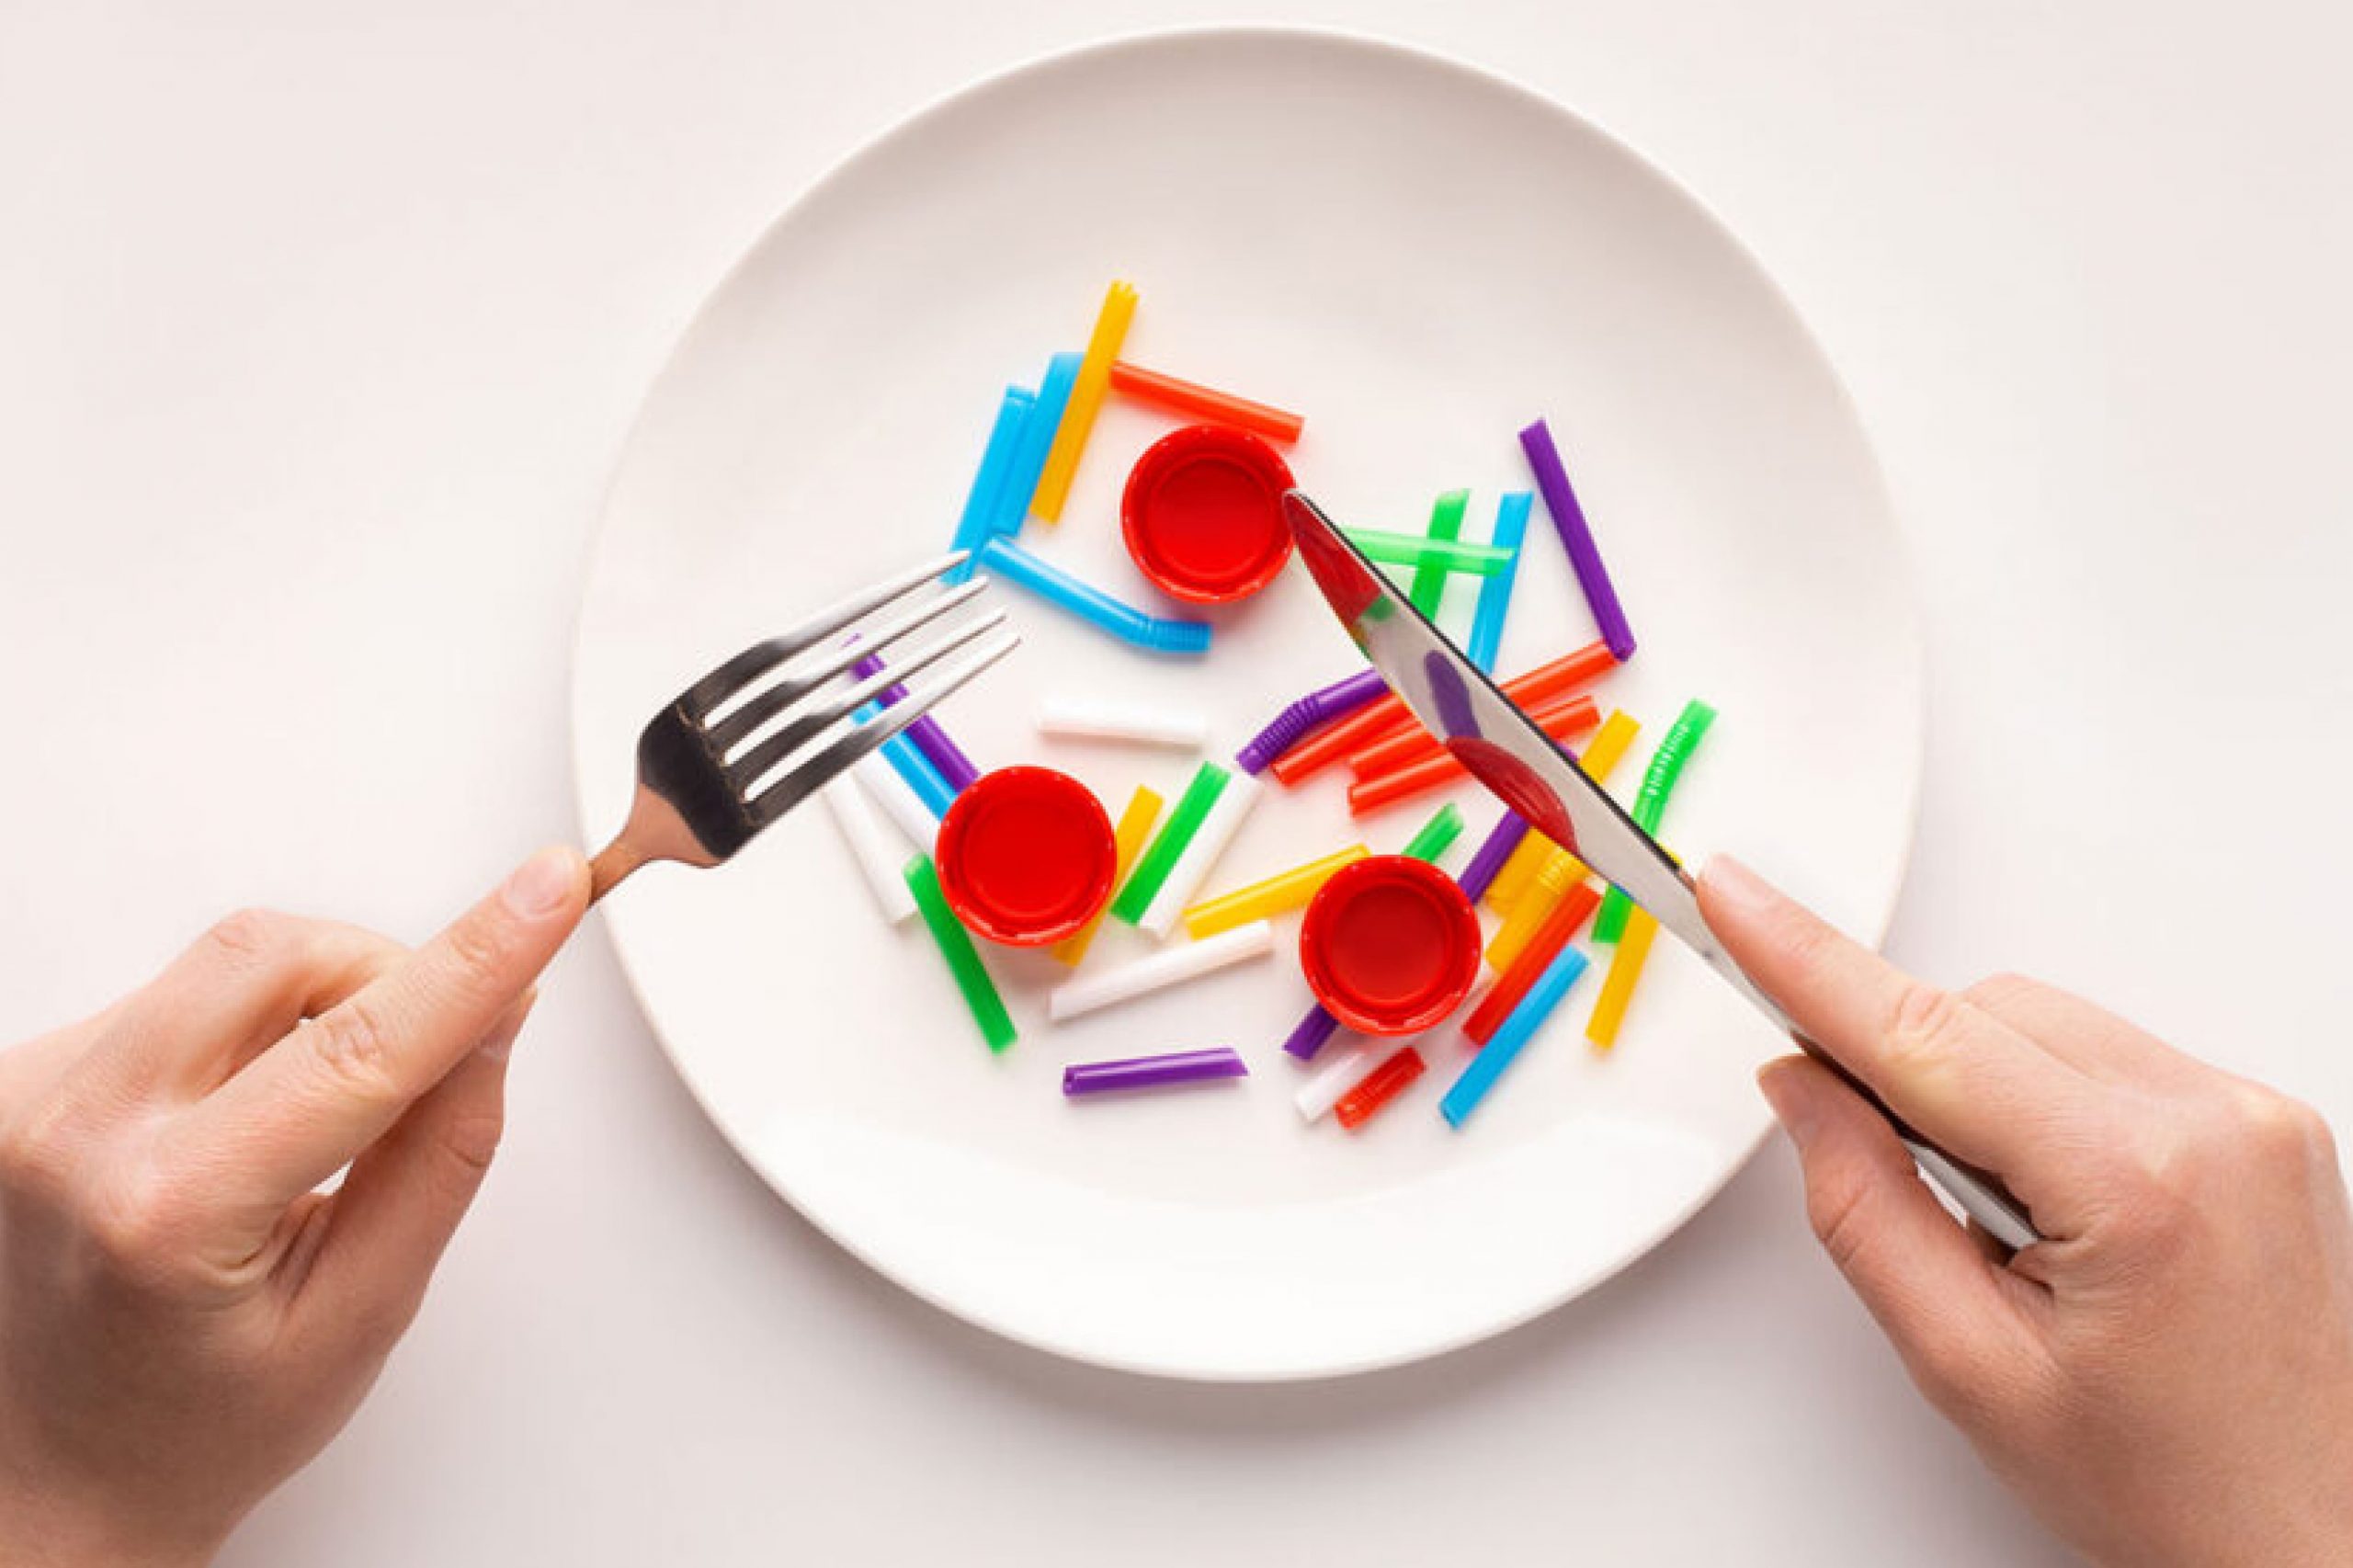  Plastique dans les aliments : vous en consommez sans le savoir, découvrez-le maintenant !